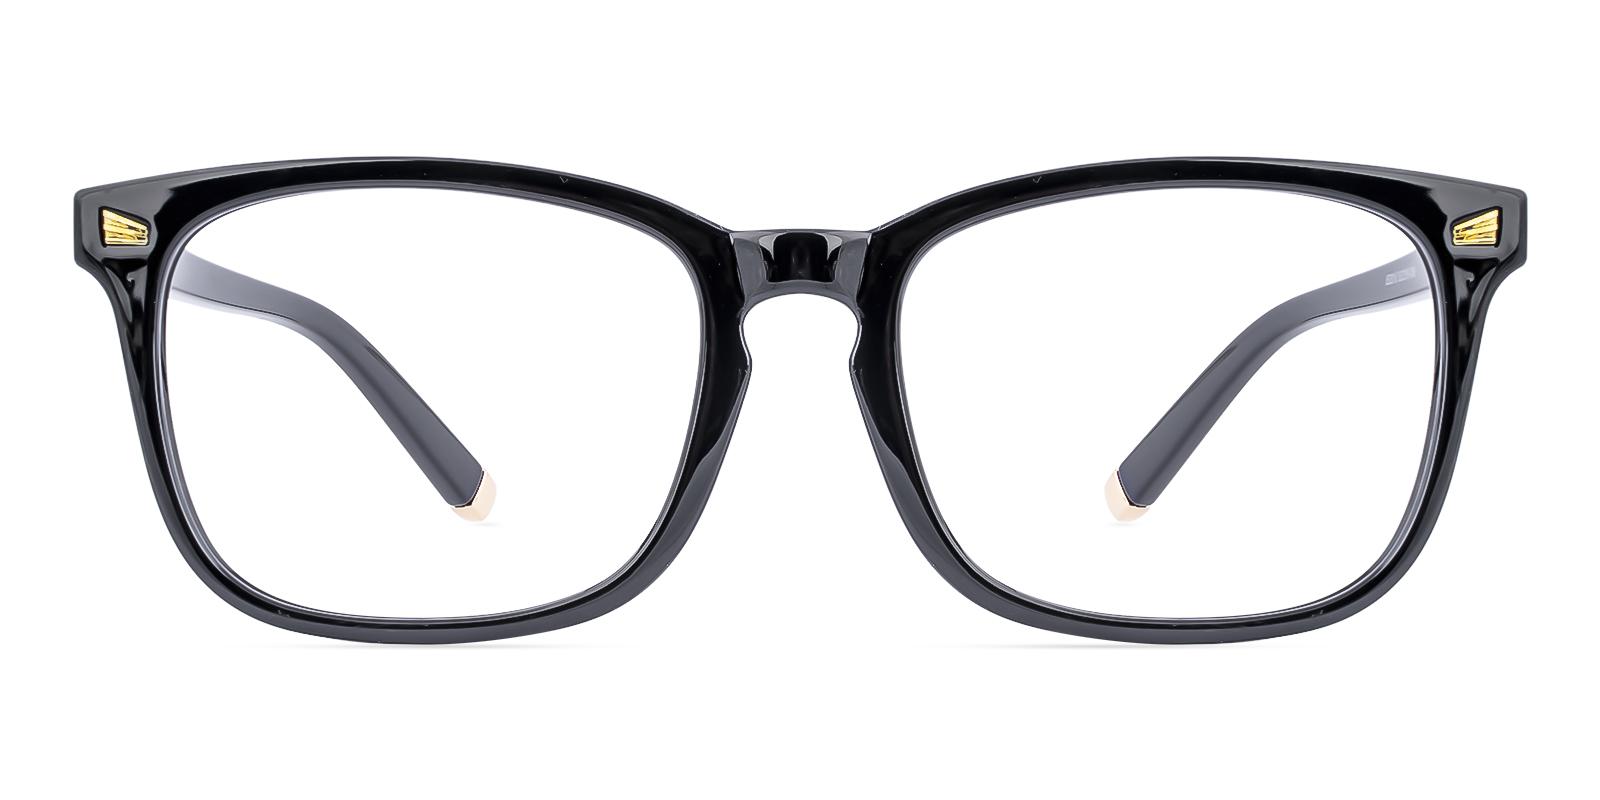 Hotably Black Plastic Eyeglasses , UniversalBridgeFit Frames from ABBE Glasses